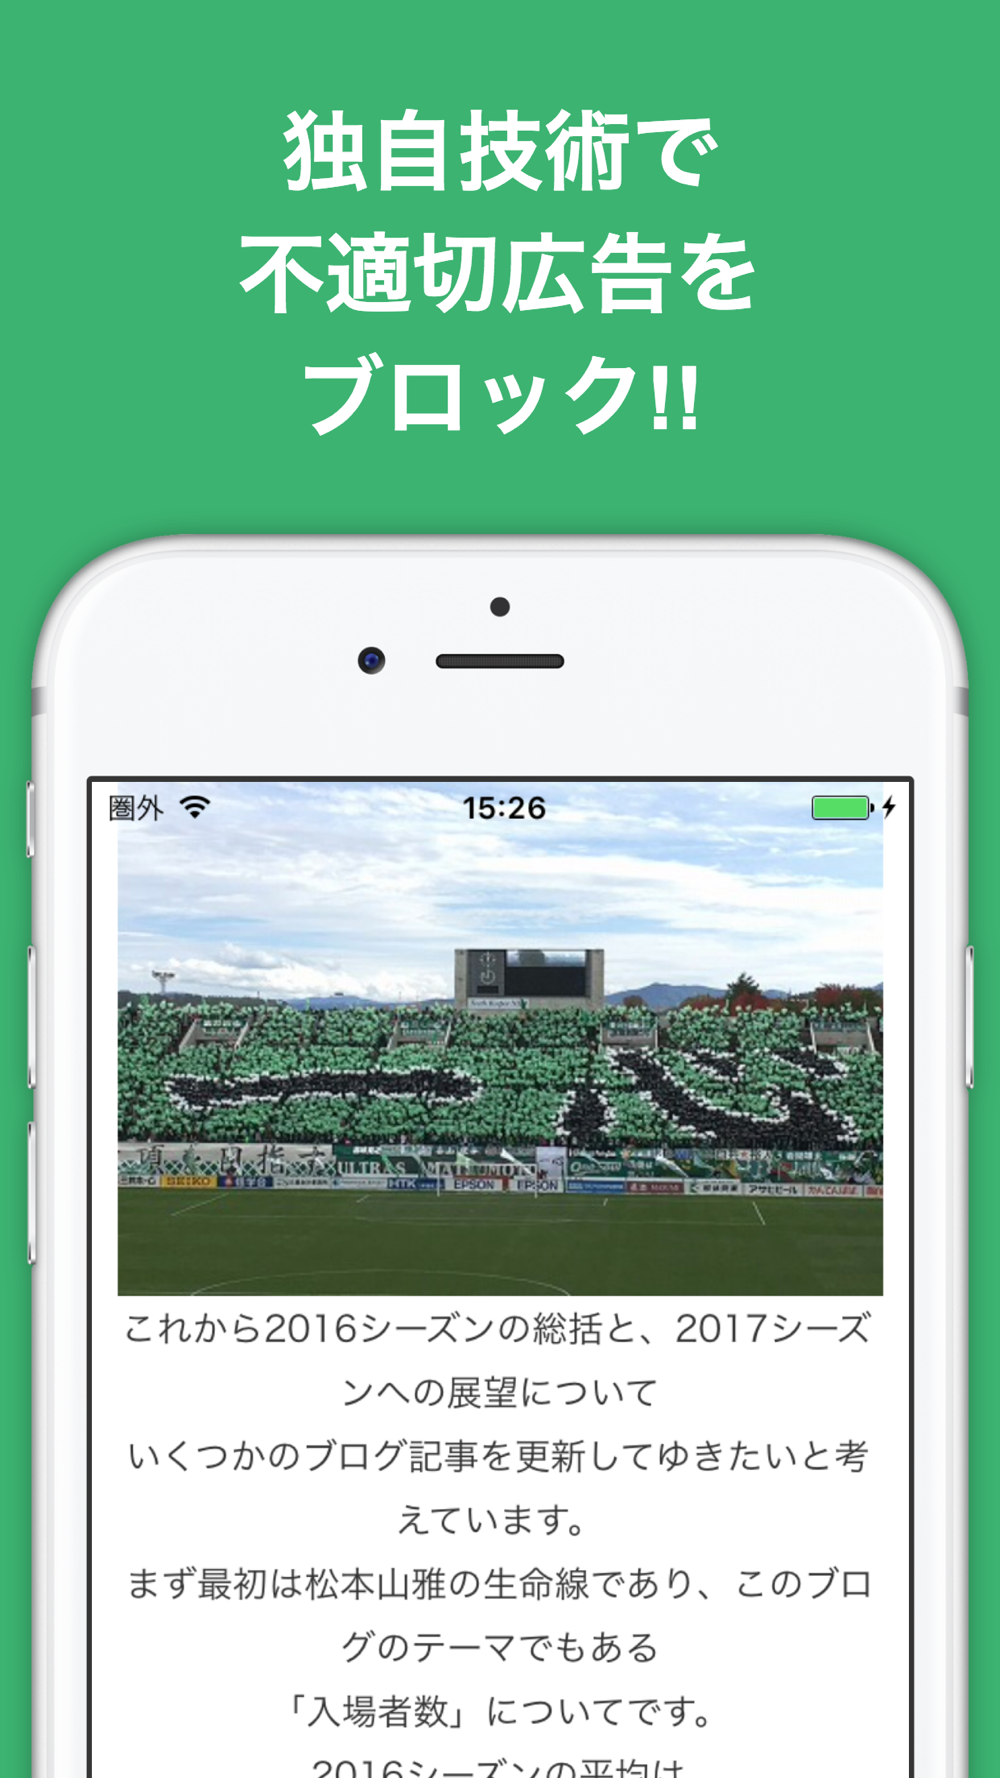 ブログまとめニュース速報 For 松本山雅fc Free Download App For Iphone Steprimo Com